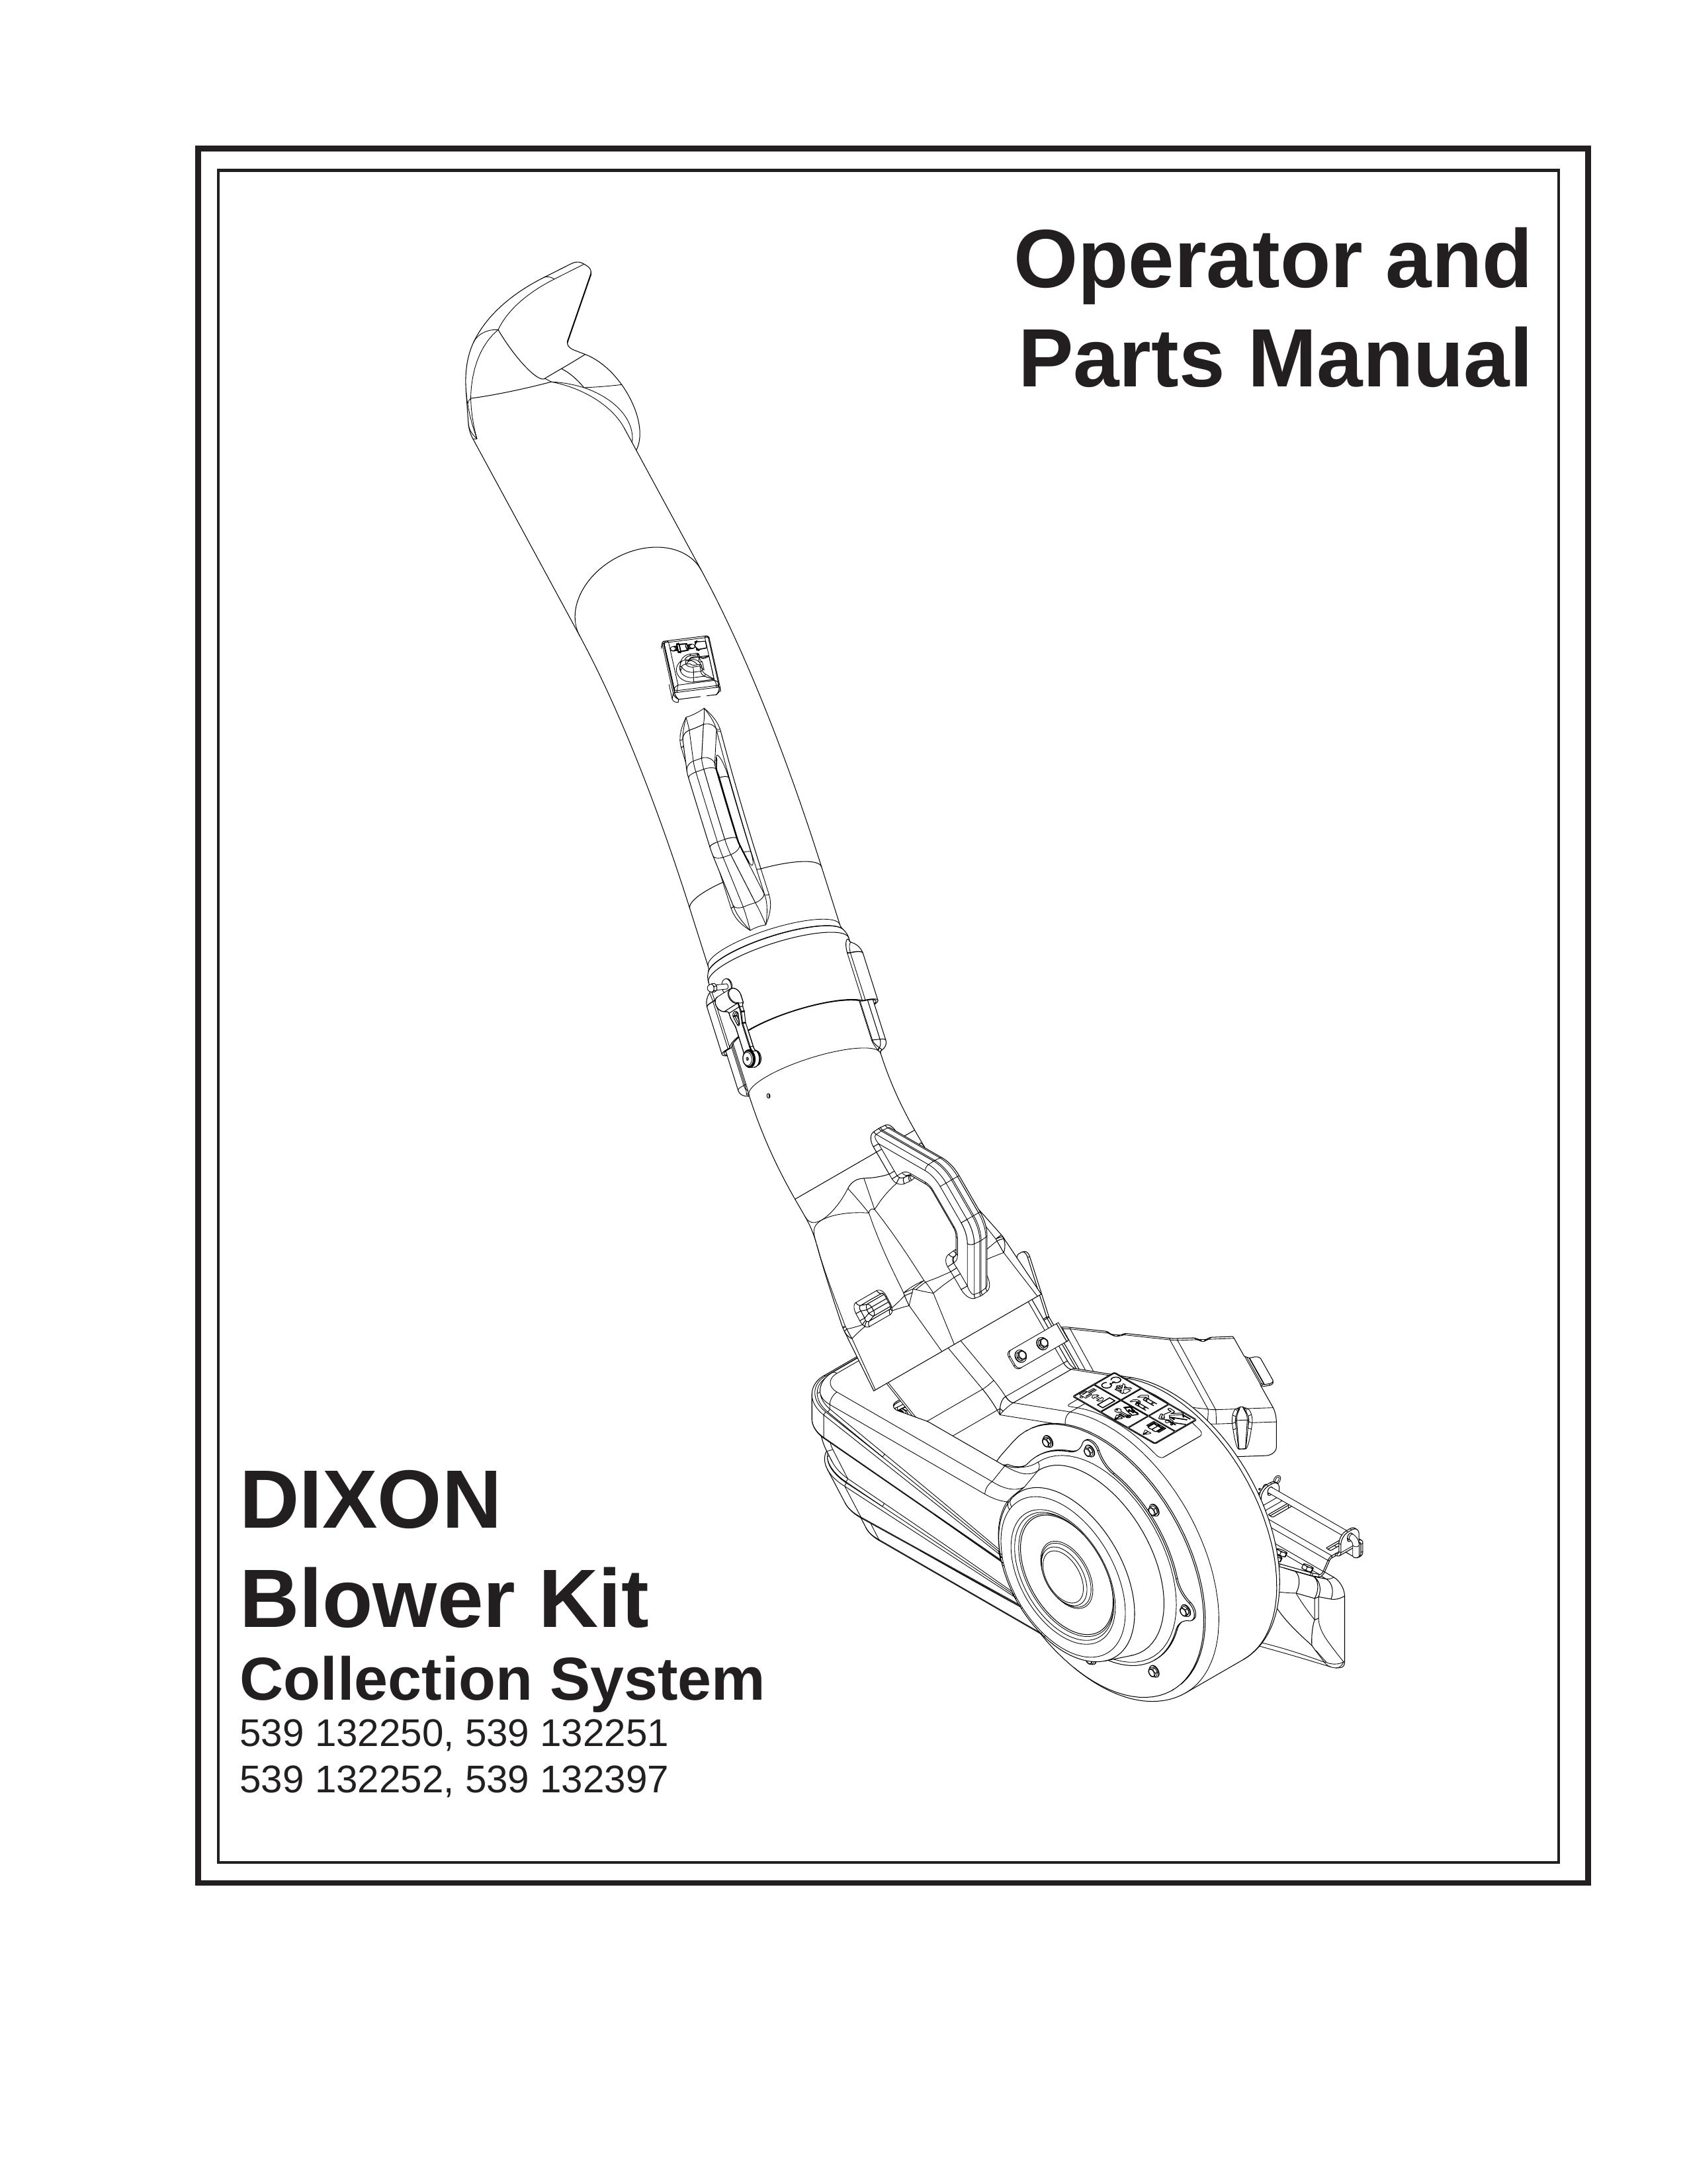 Dixon 539 132397 Blower User Manual